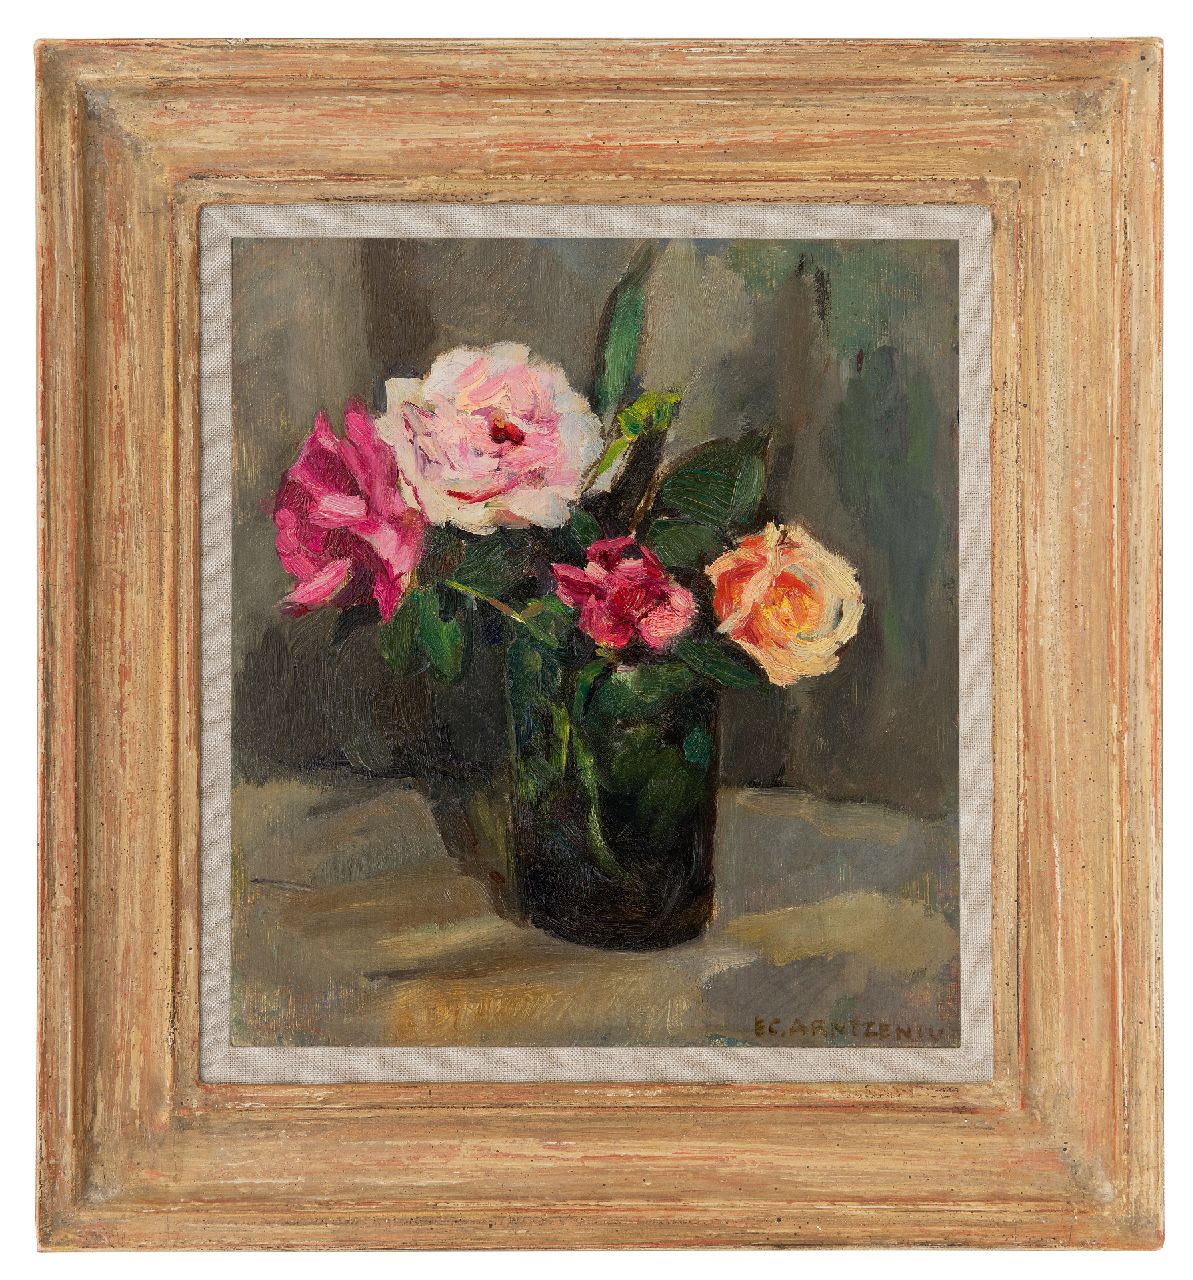 Arntzenius E.C.  | Elise Claudine Arntzenius, Roses in a green vase, oil on panel 25.9 x 24.0 cm, signed l.r.